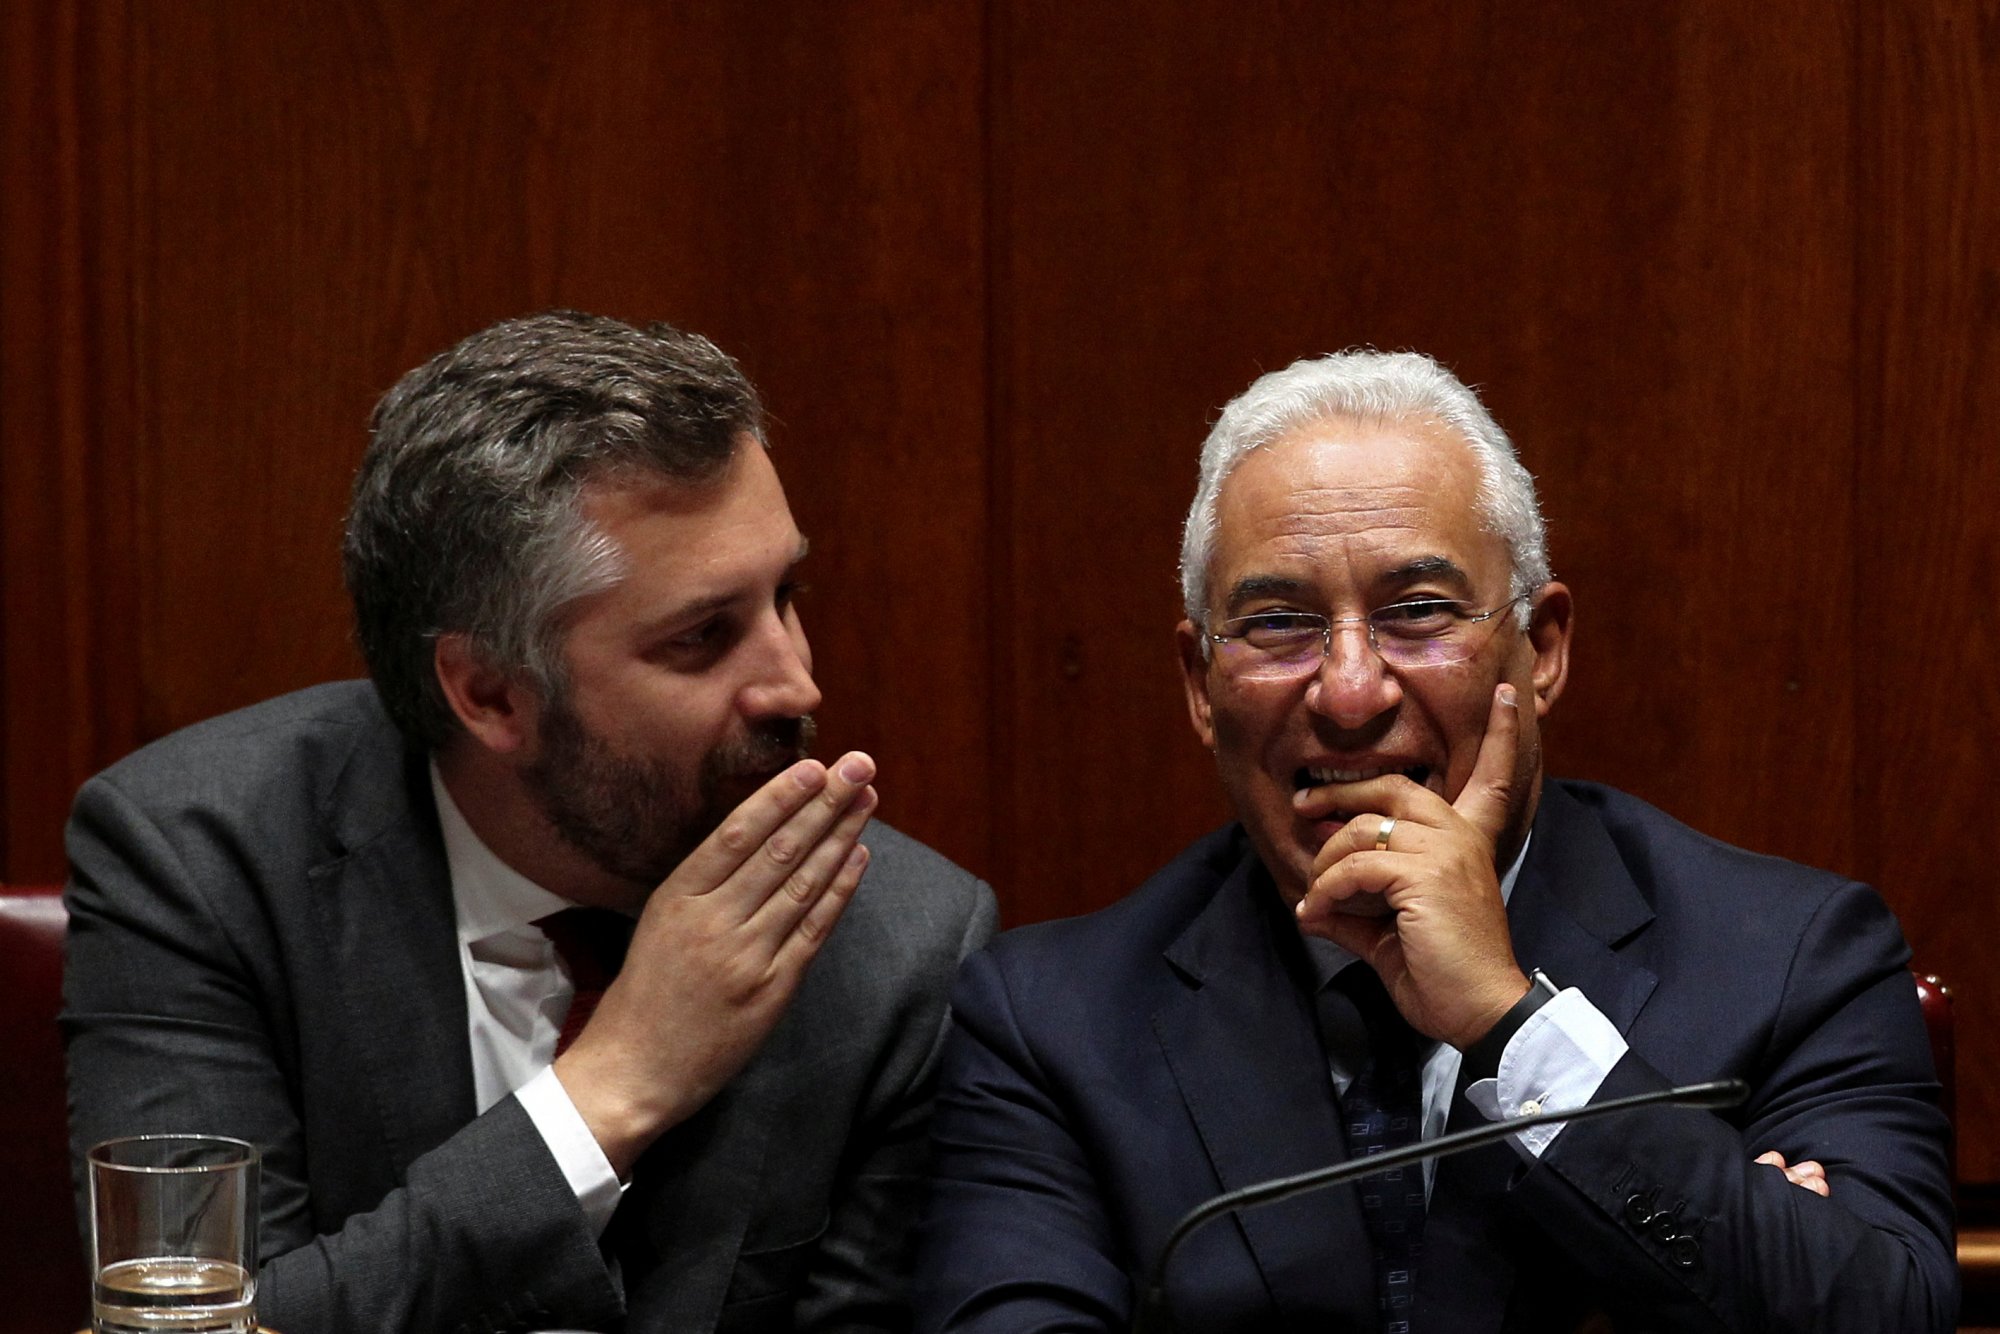 Πέντρο Νούνο Σάντος, ένας εκκολαπτόμενος νέος πρωθυπουργός για την Πορτογαλία;